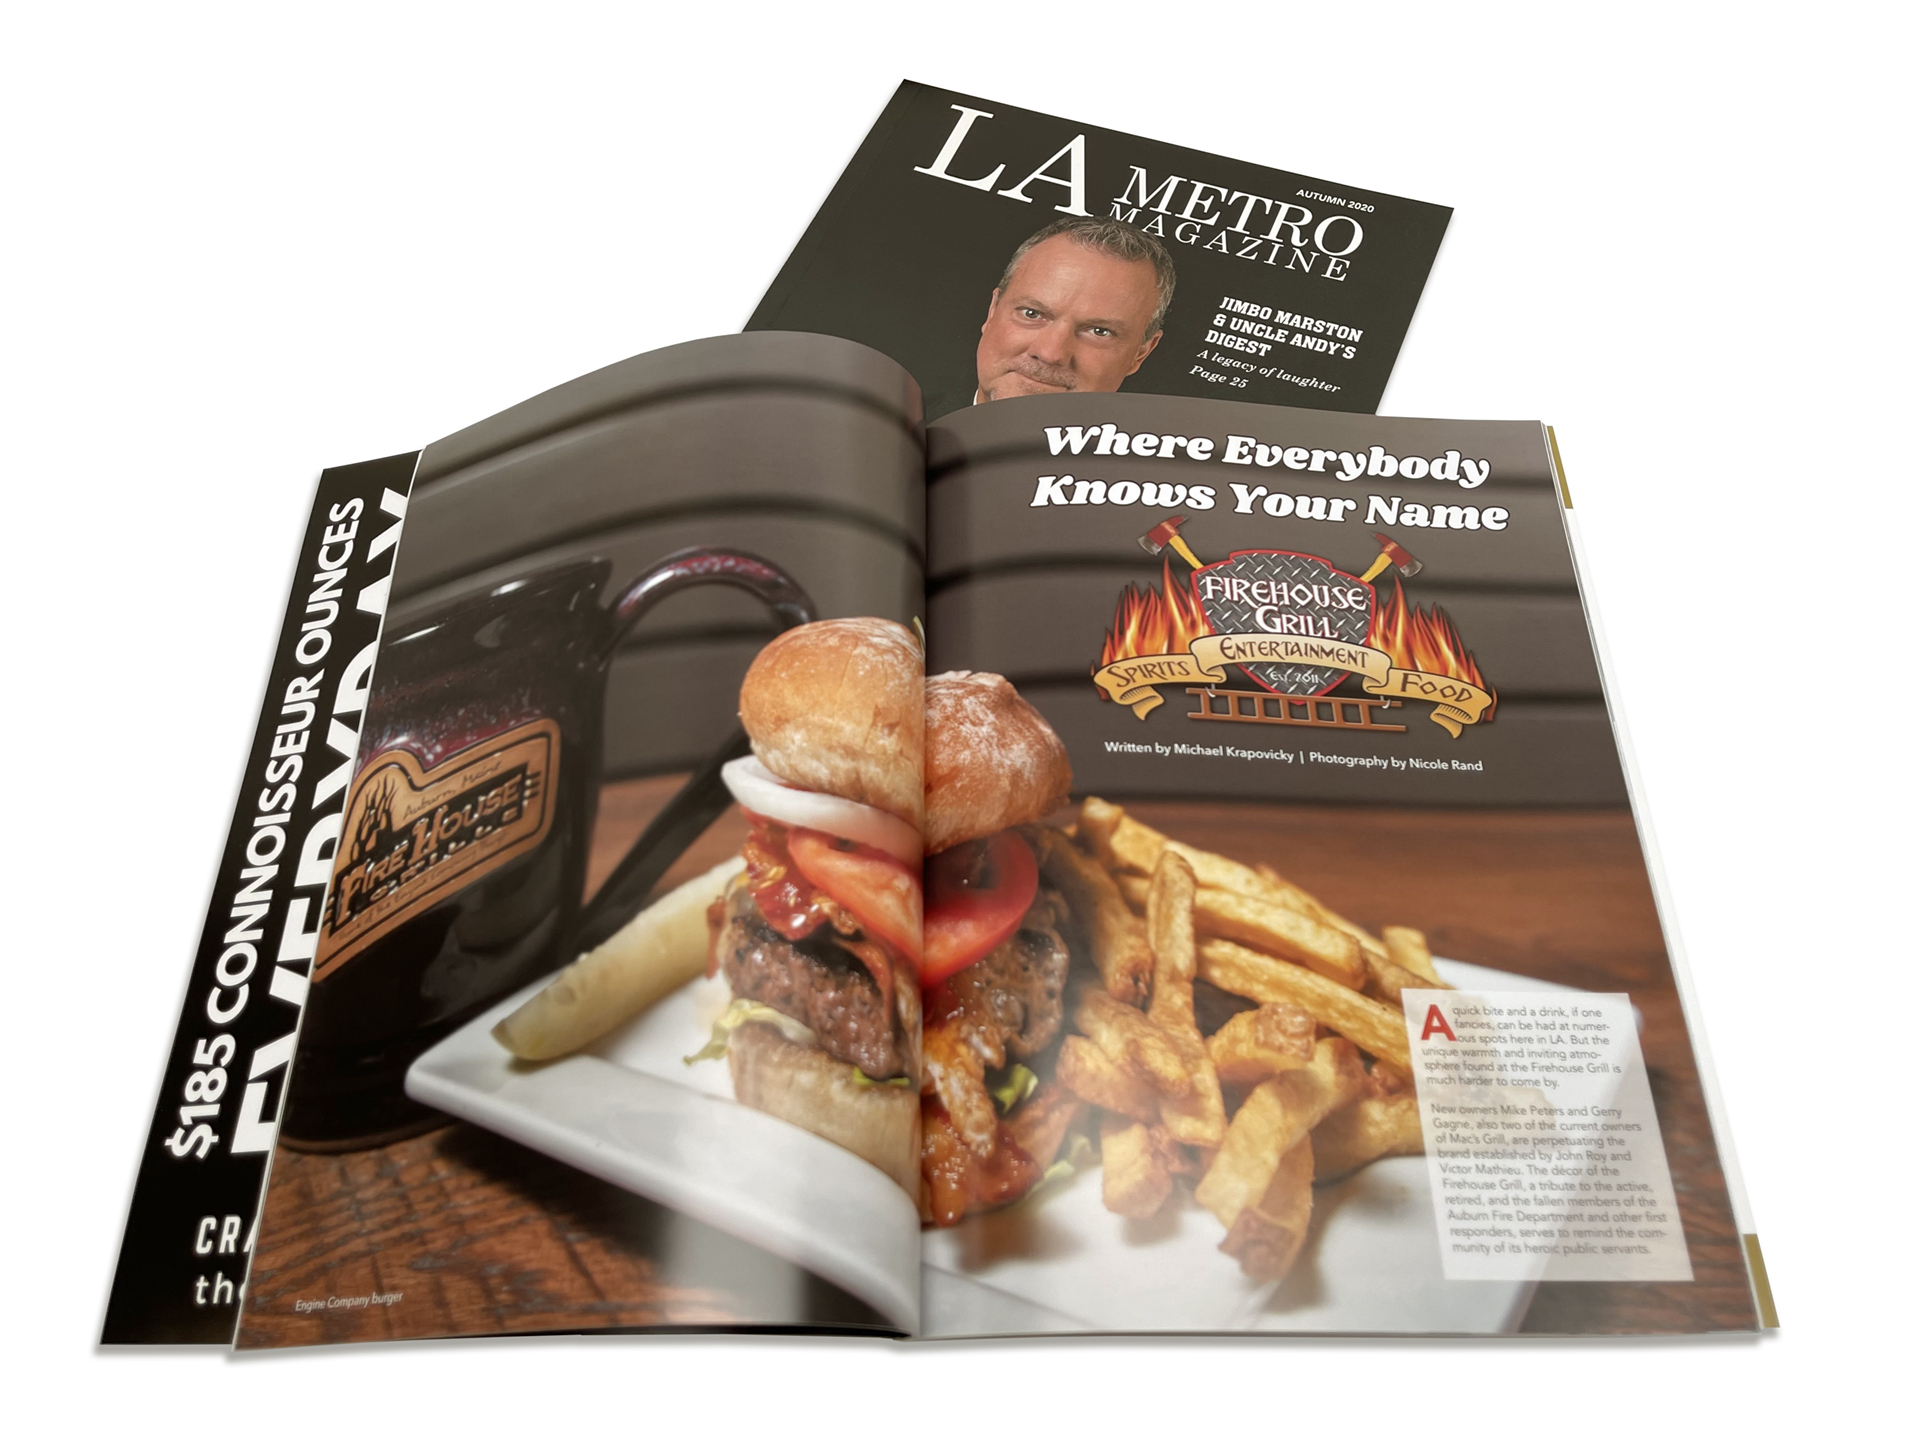 LA Metro Magazine Penmor